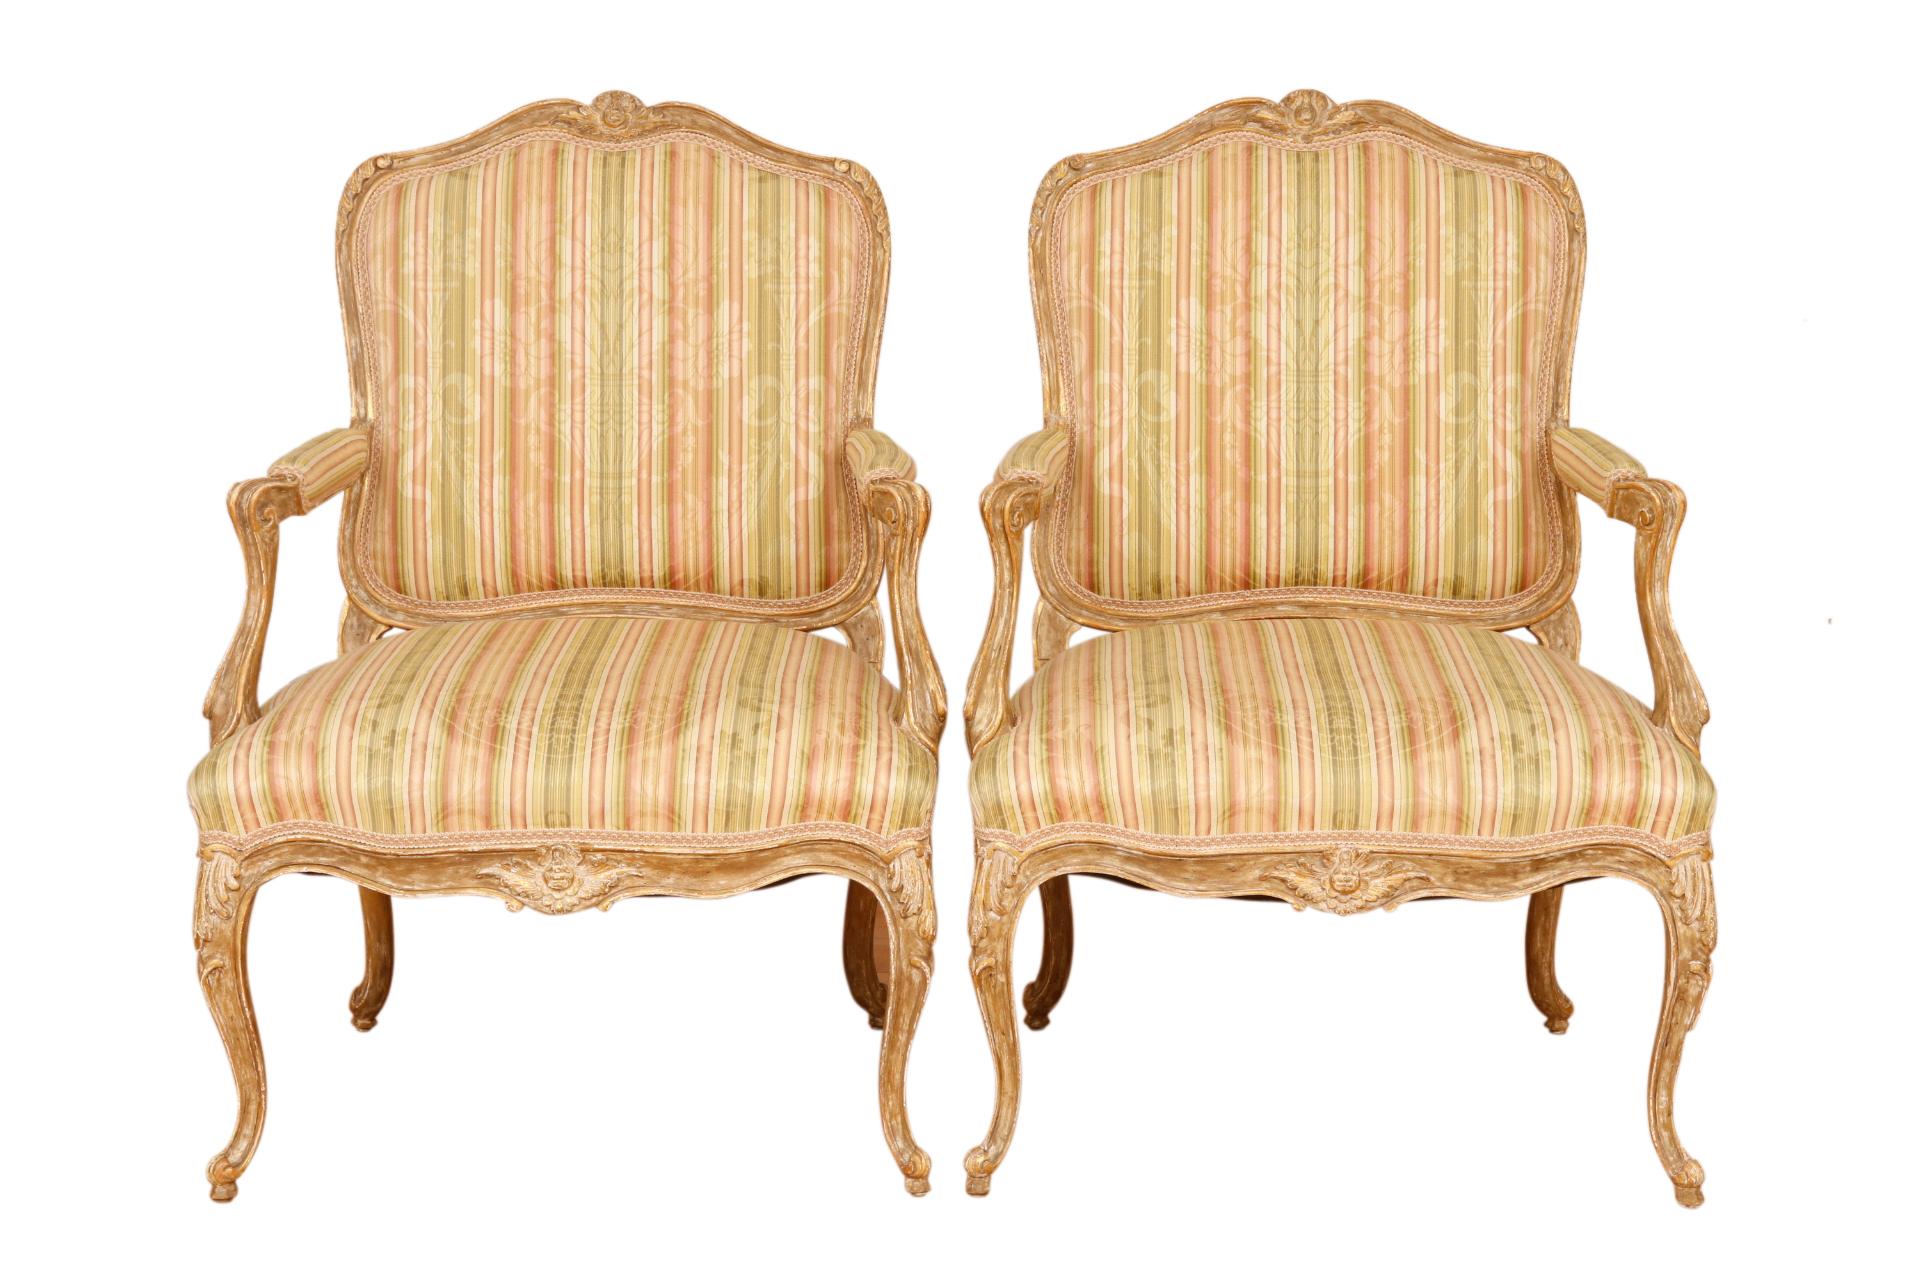 Ein Paar französische Fauteuils a la Reine im Stil Louis XV. Die Sitze sind mit einem seidenen, gestreiften Brokat gepolstert und mit geflochtener Gimpe befestigt. Ein klassisches florales Vasen- und Bandmotiv wird von vertikalen Streifen in Salbei,